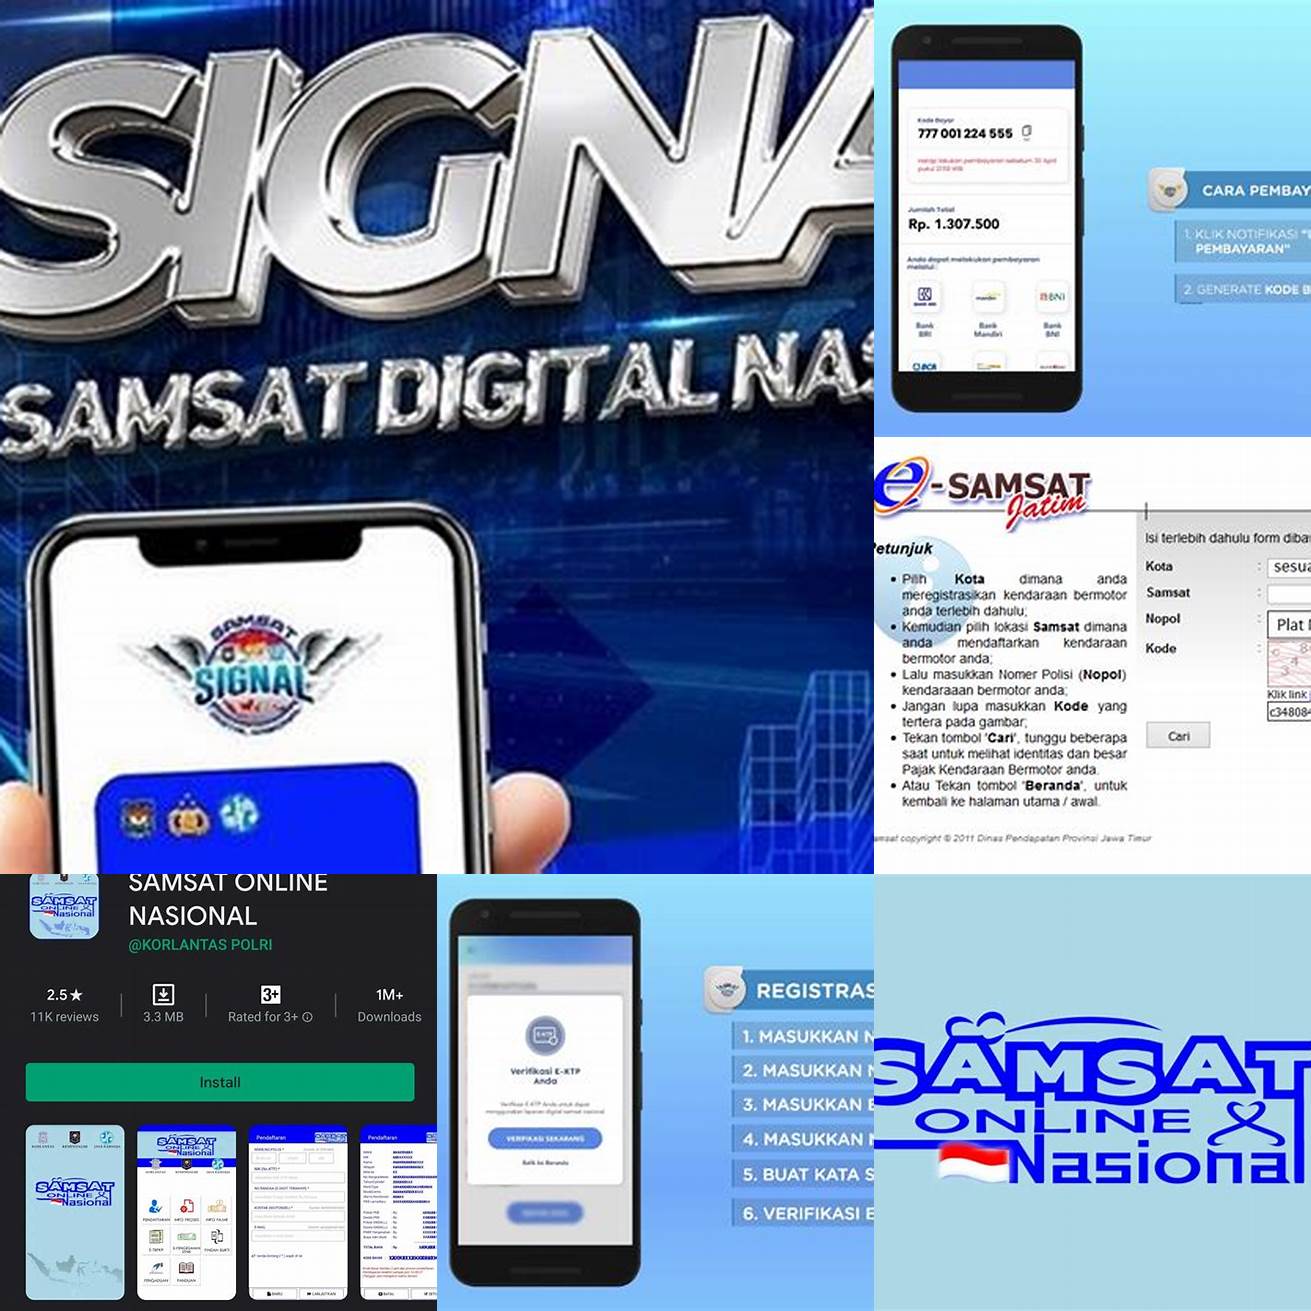 3 Menggunakan Aplikasi Samsat Online